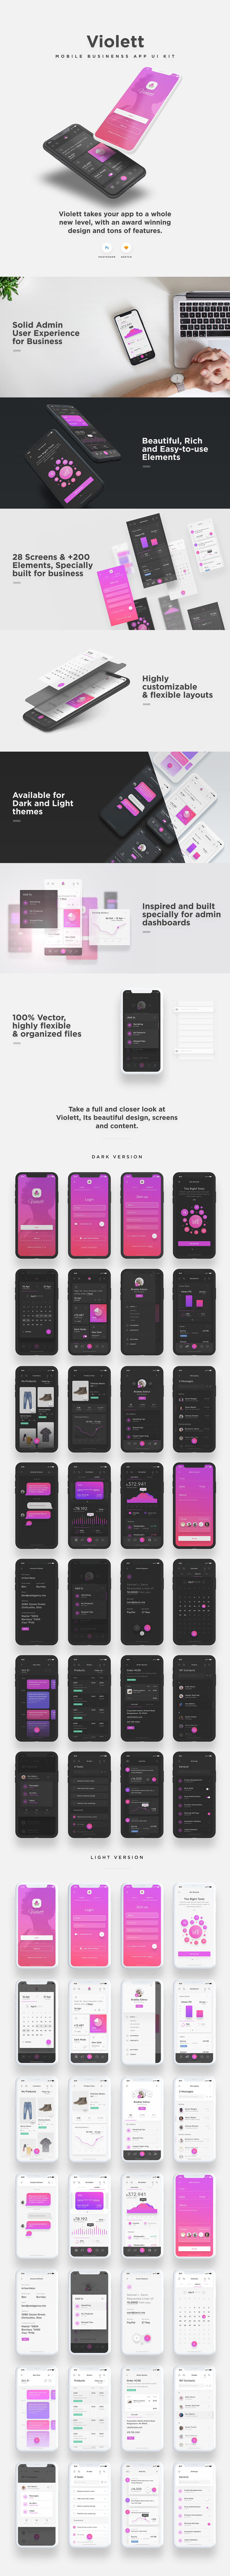 UI/UX ui design user interface Mobile app design user experience Figma